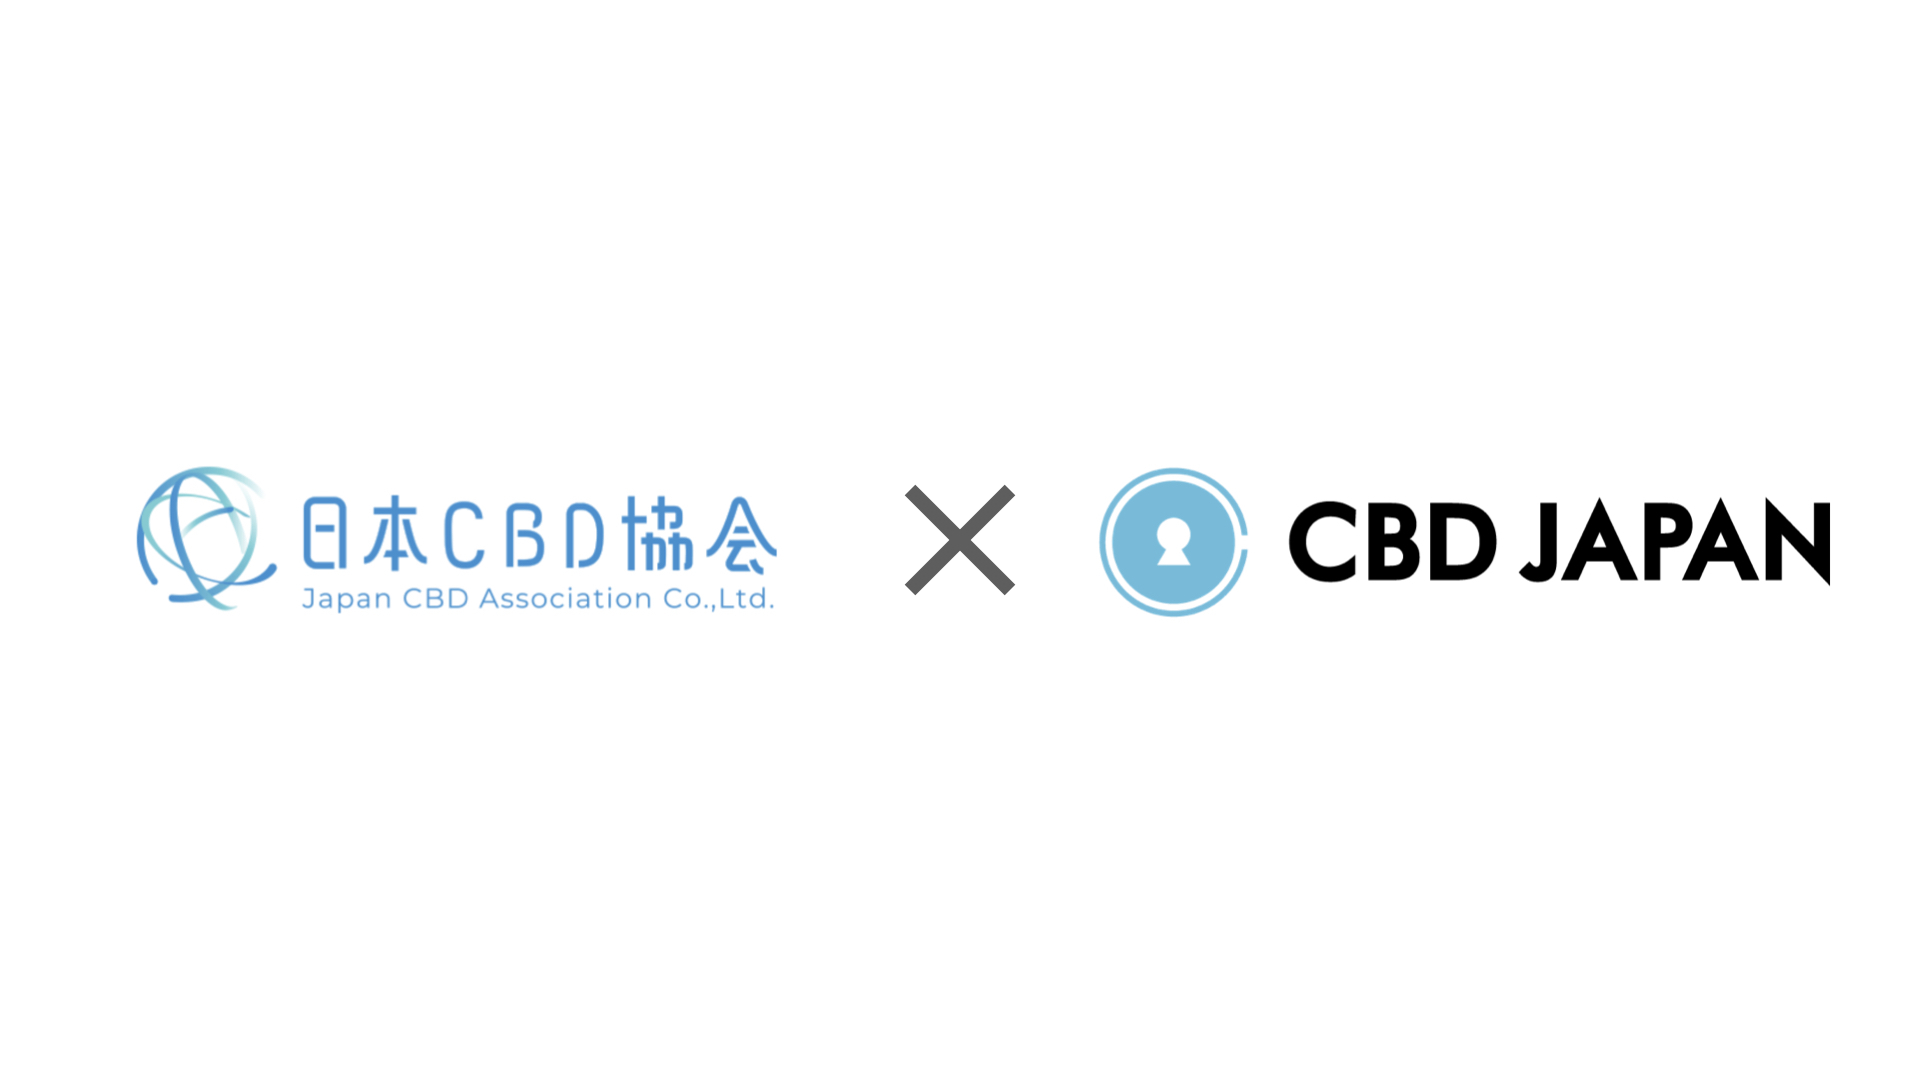 「CBDの開発から販売まで一気通貫で取り組み可能」
CBD JAPANと日本CBD協会が業務連携